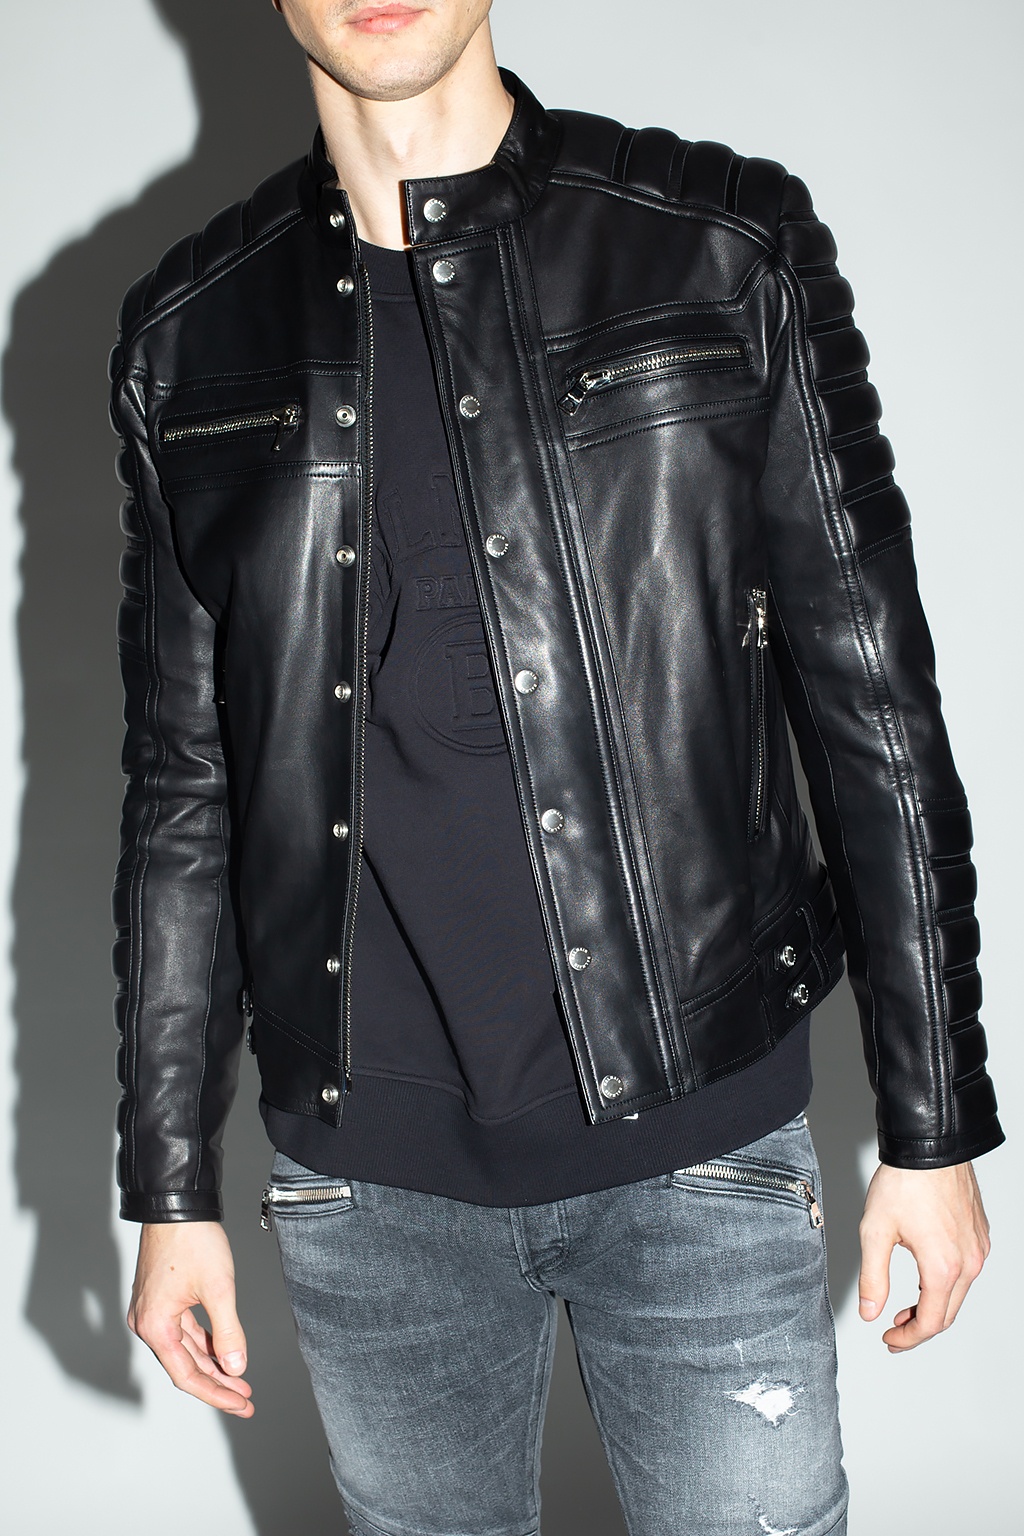 Balmain Leather jacket with logo